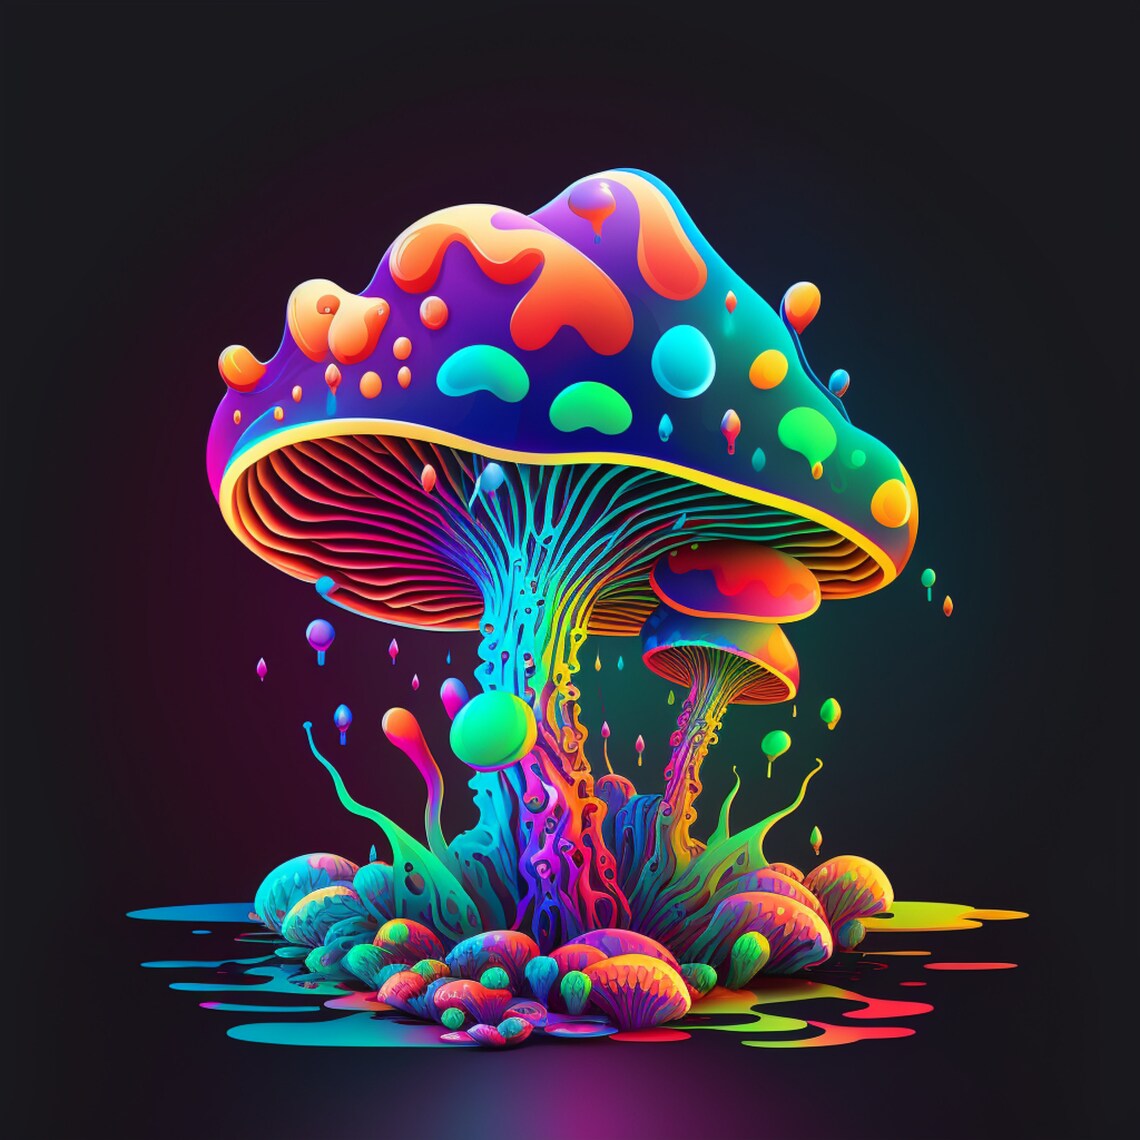 Digital Trippy Mushroom Art - Etsy